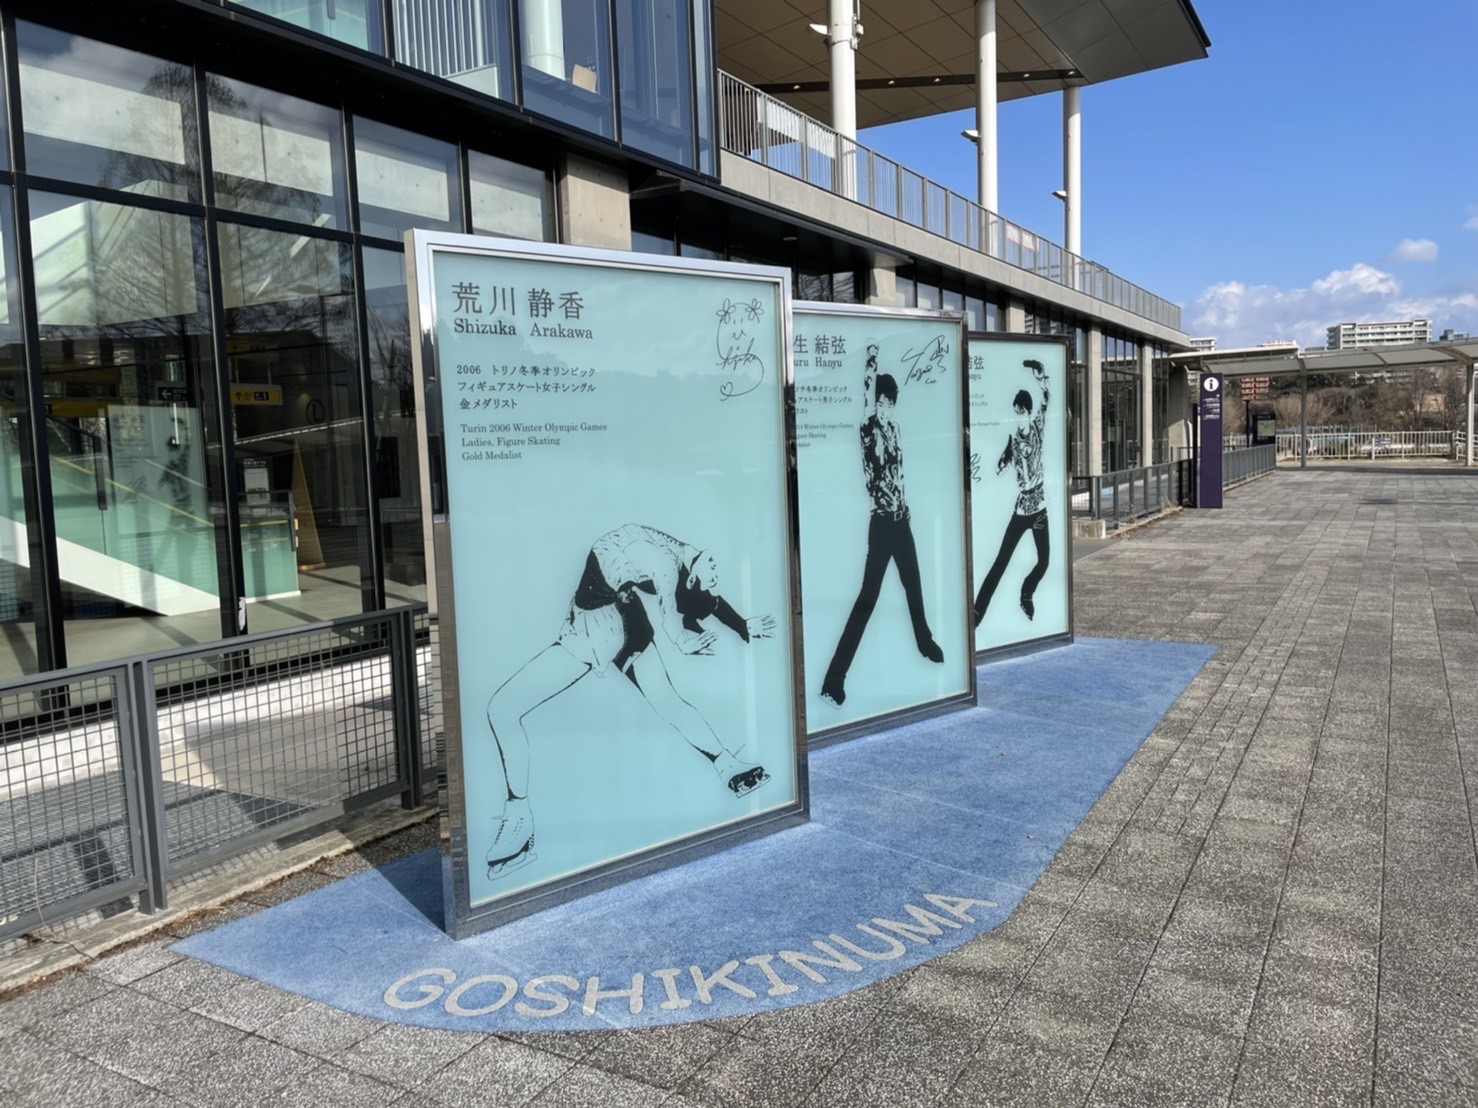 「GOSHIKINUMA」のブルーの地面は、日本フィギュアスケート発祥の地「五色沼」をイメージ。その上でスケートをしているというデザインとなっています。